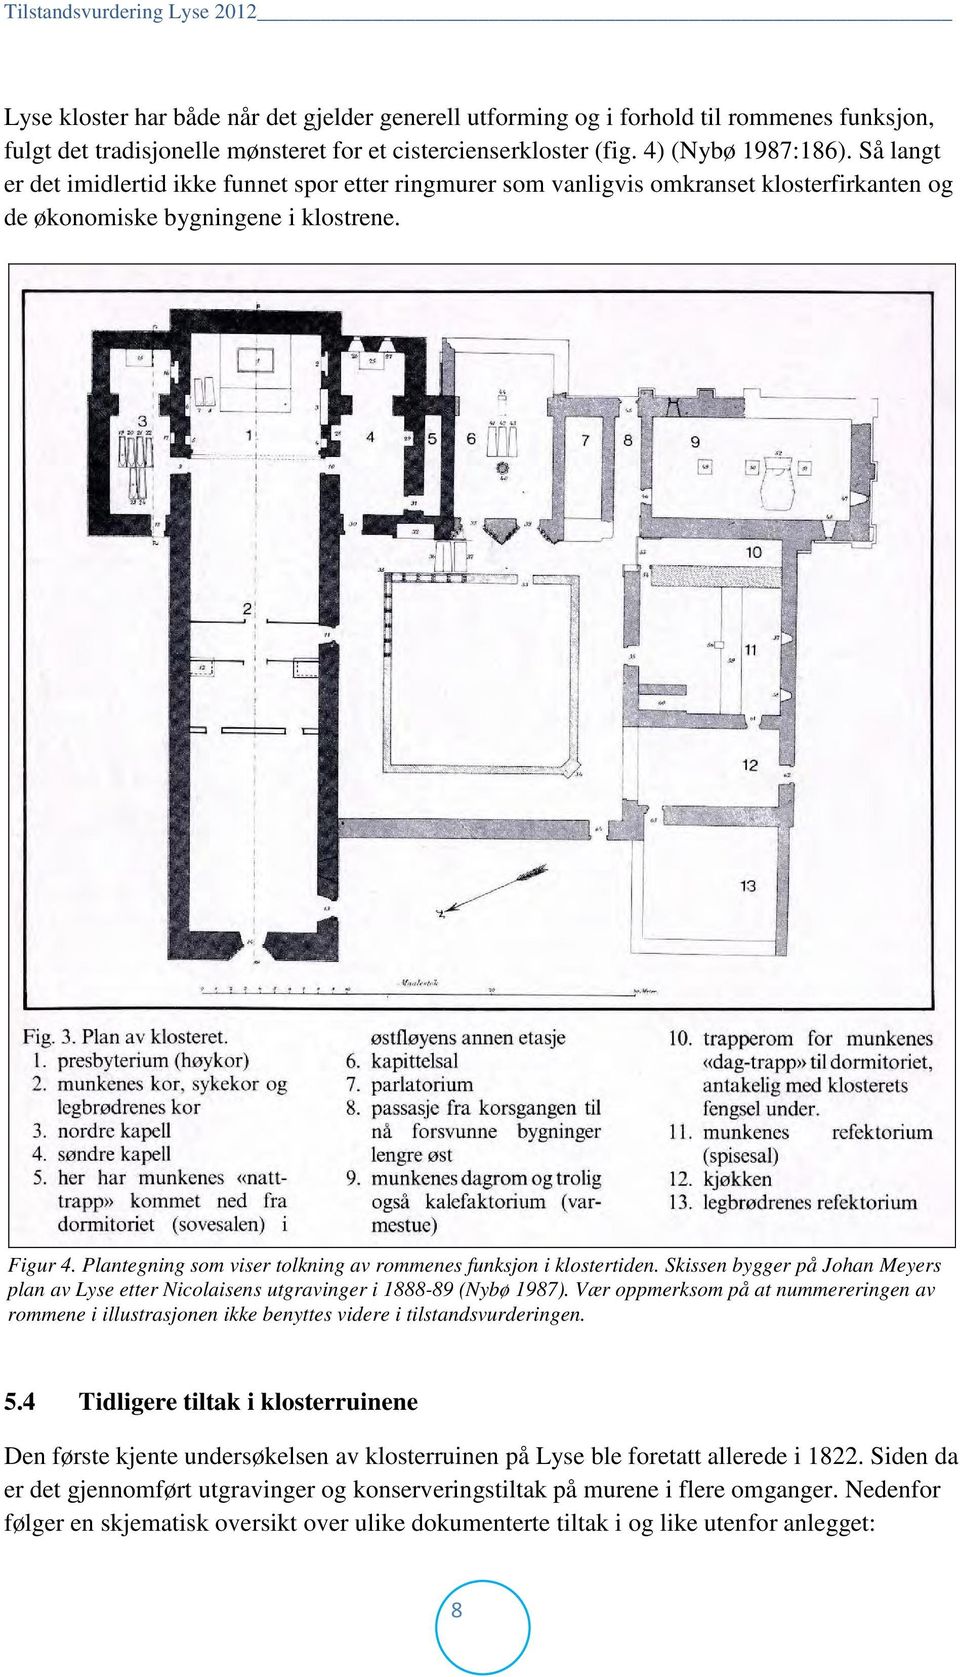 Plantegning som viser tolkning av rommenes funksjon i klostertiden. Skissen bygger på Johan Meyers plan av Lyse etter Nicolaisens utgravinger i 1888-89 (Nybø 1987).